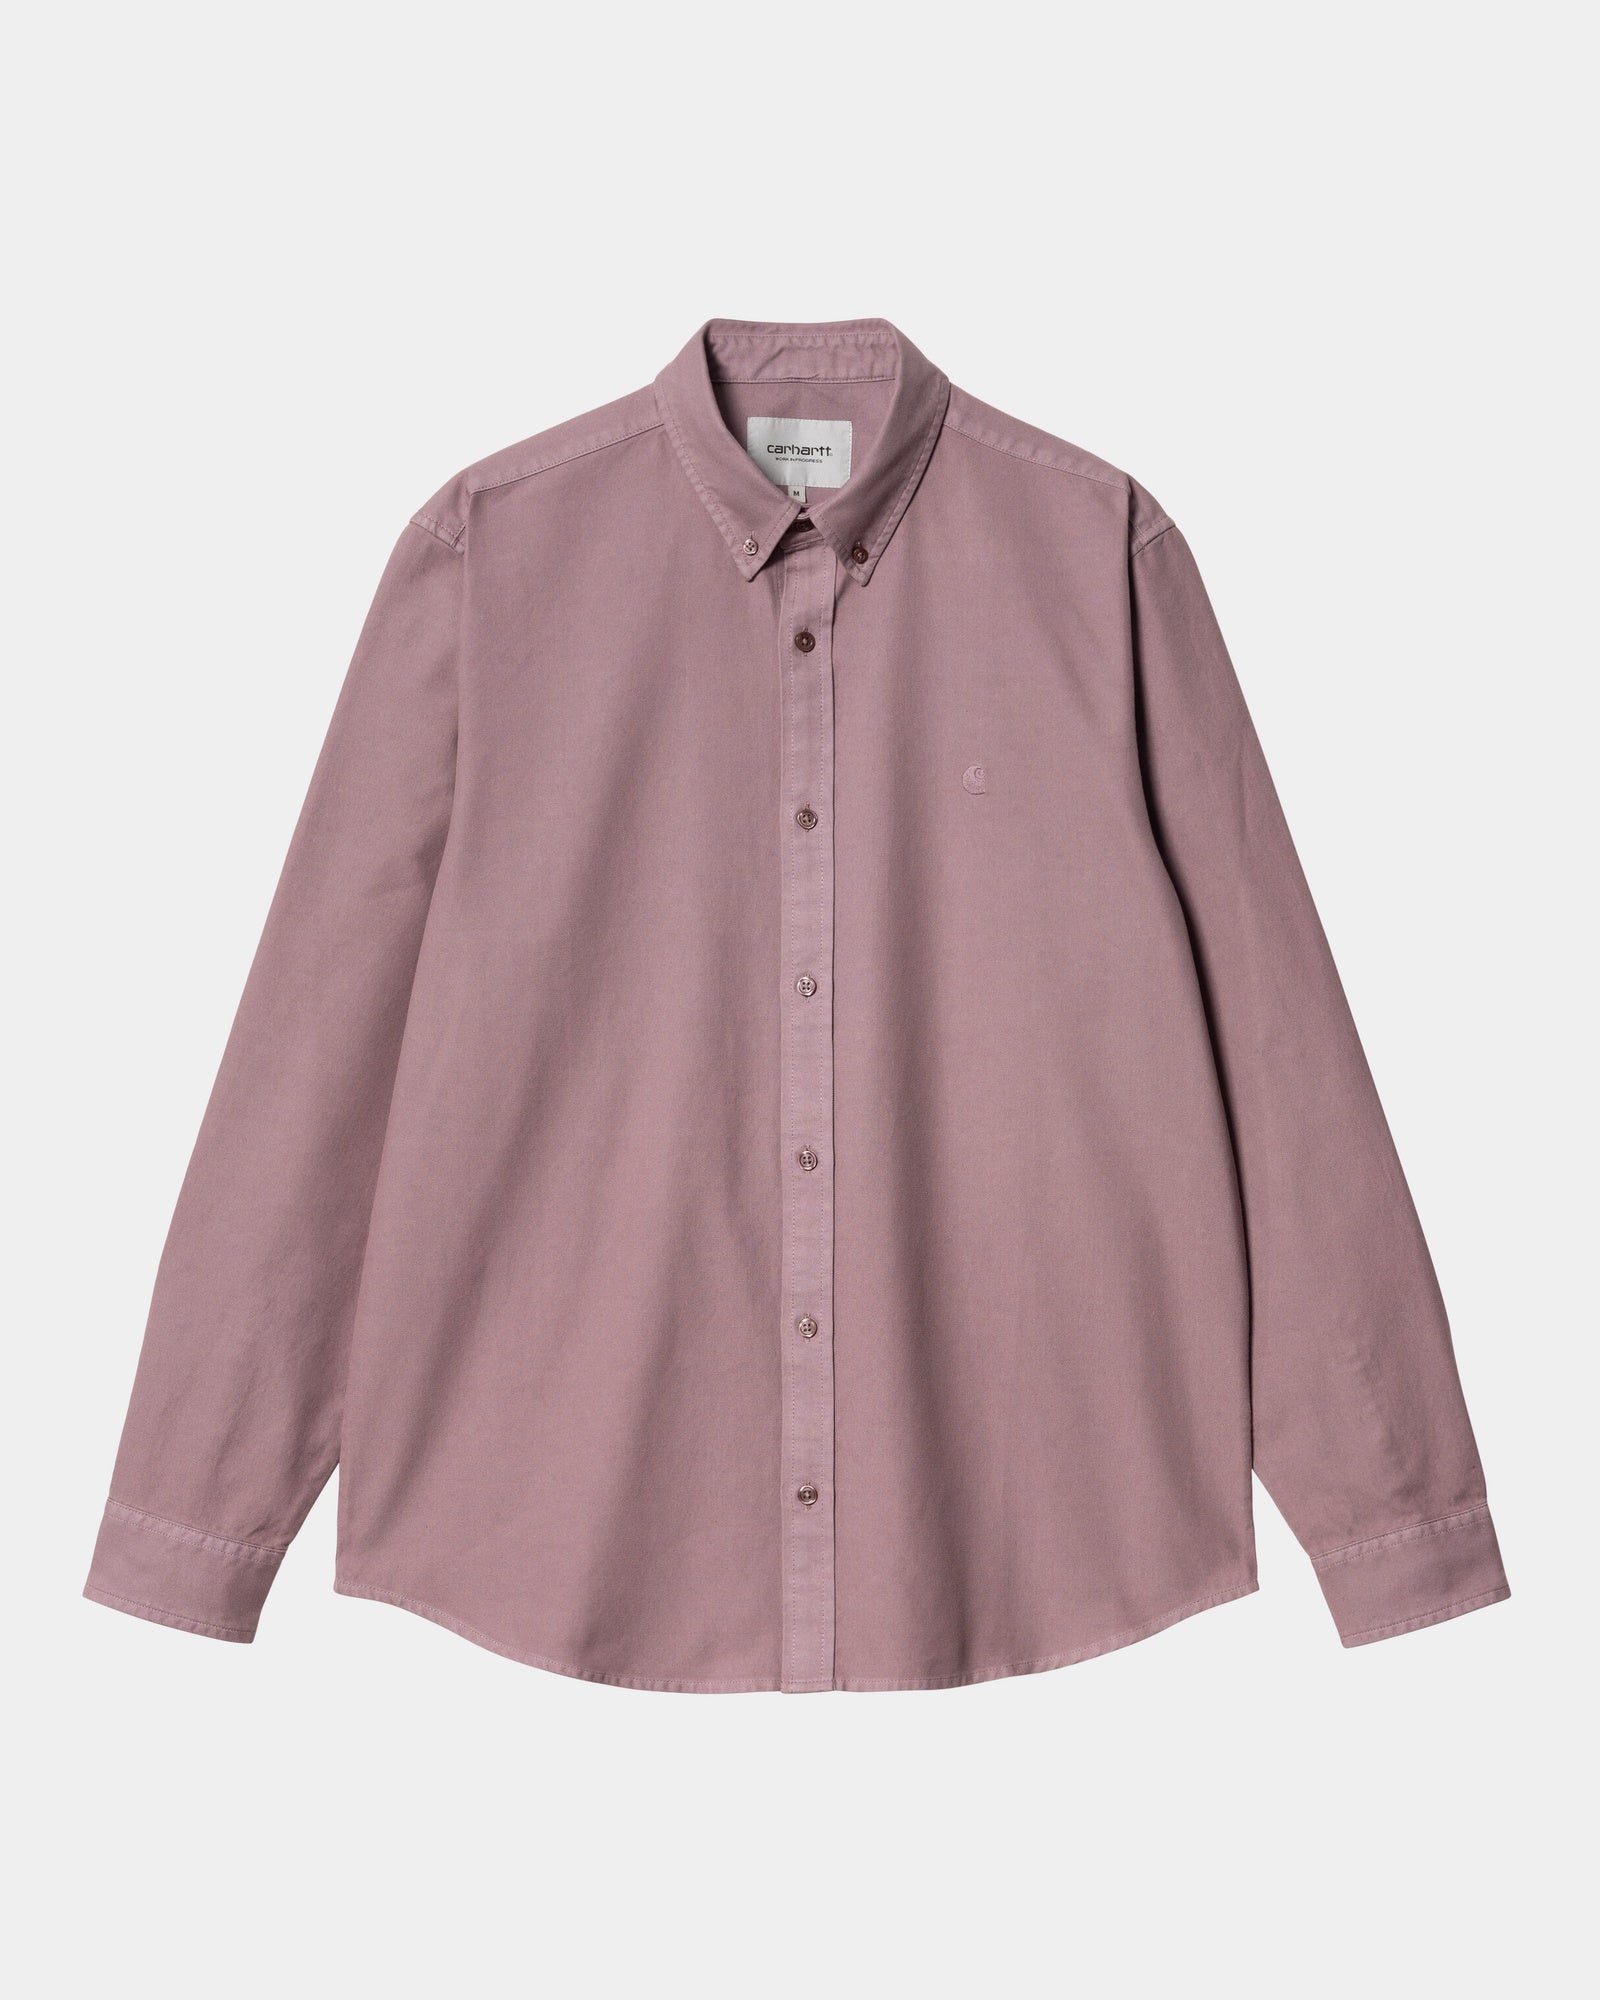 칼하트WIP Carhartt Bolton Shirt,Daphne garment dyed